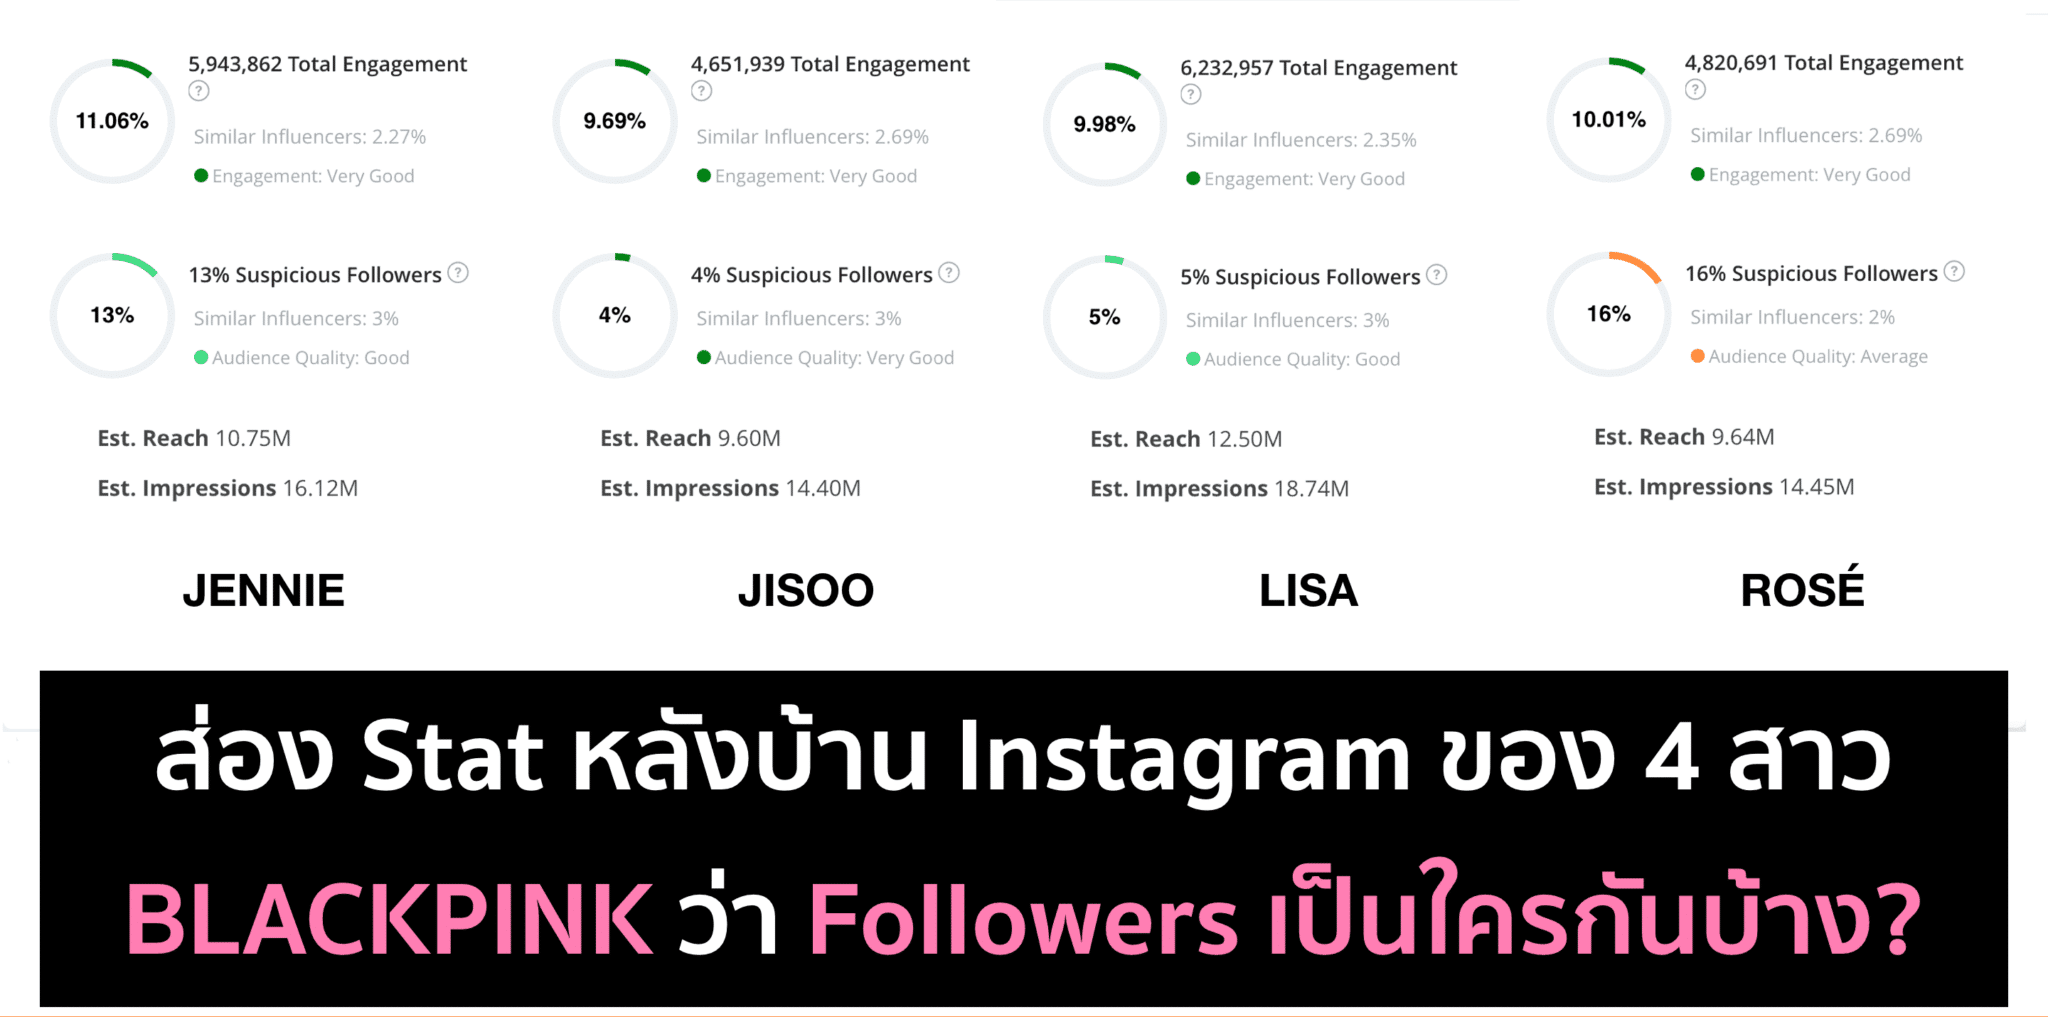 ส่อง Data หลังบ้าน Instagram ของ 4 สาว BLACKPINK ด้วย Affable.ai